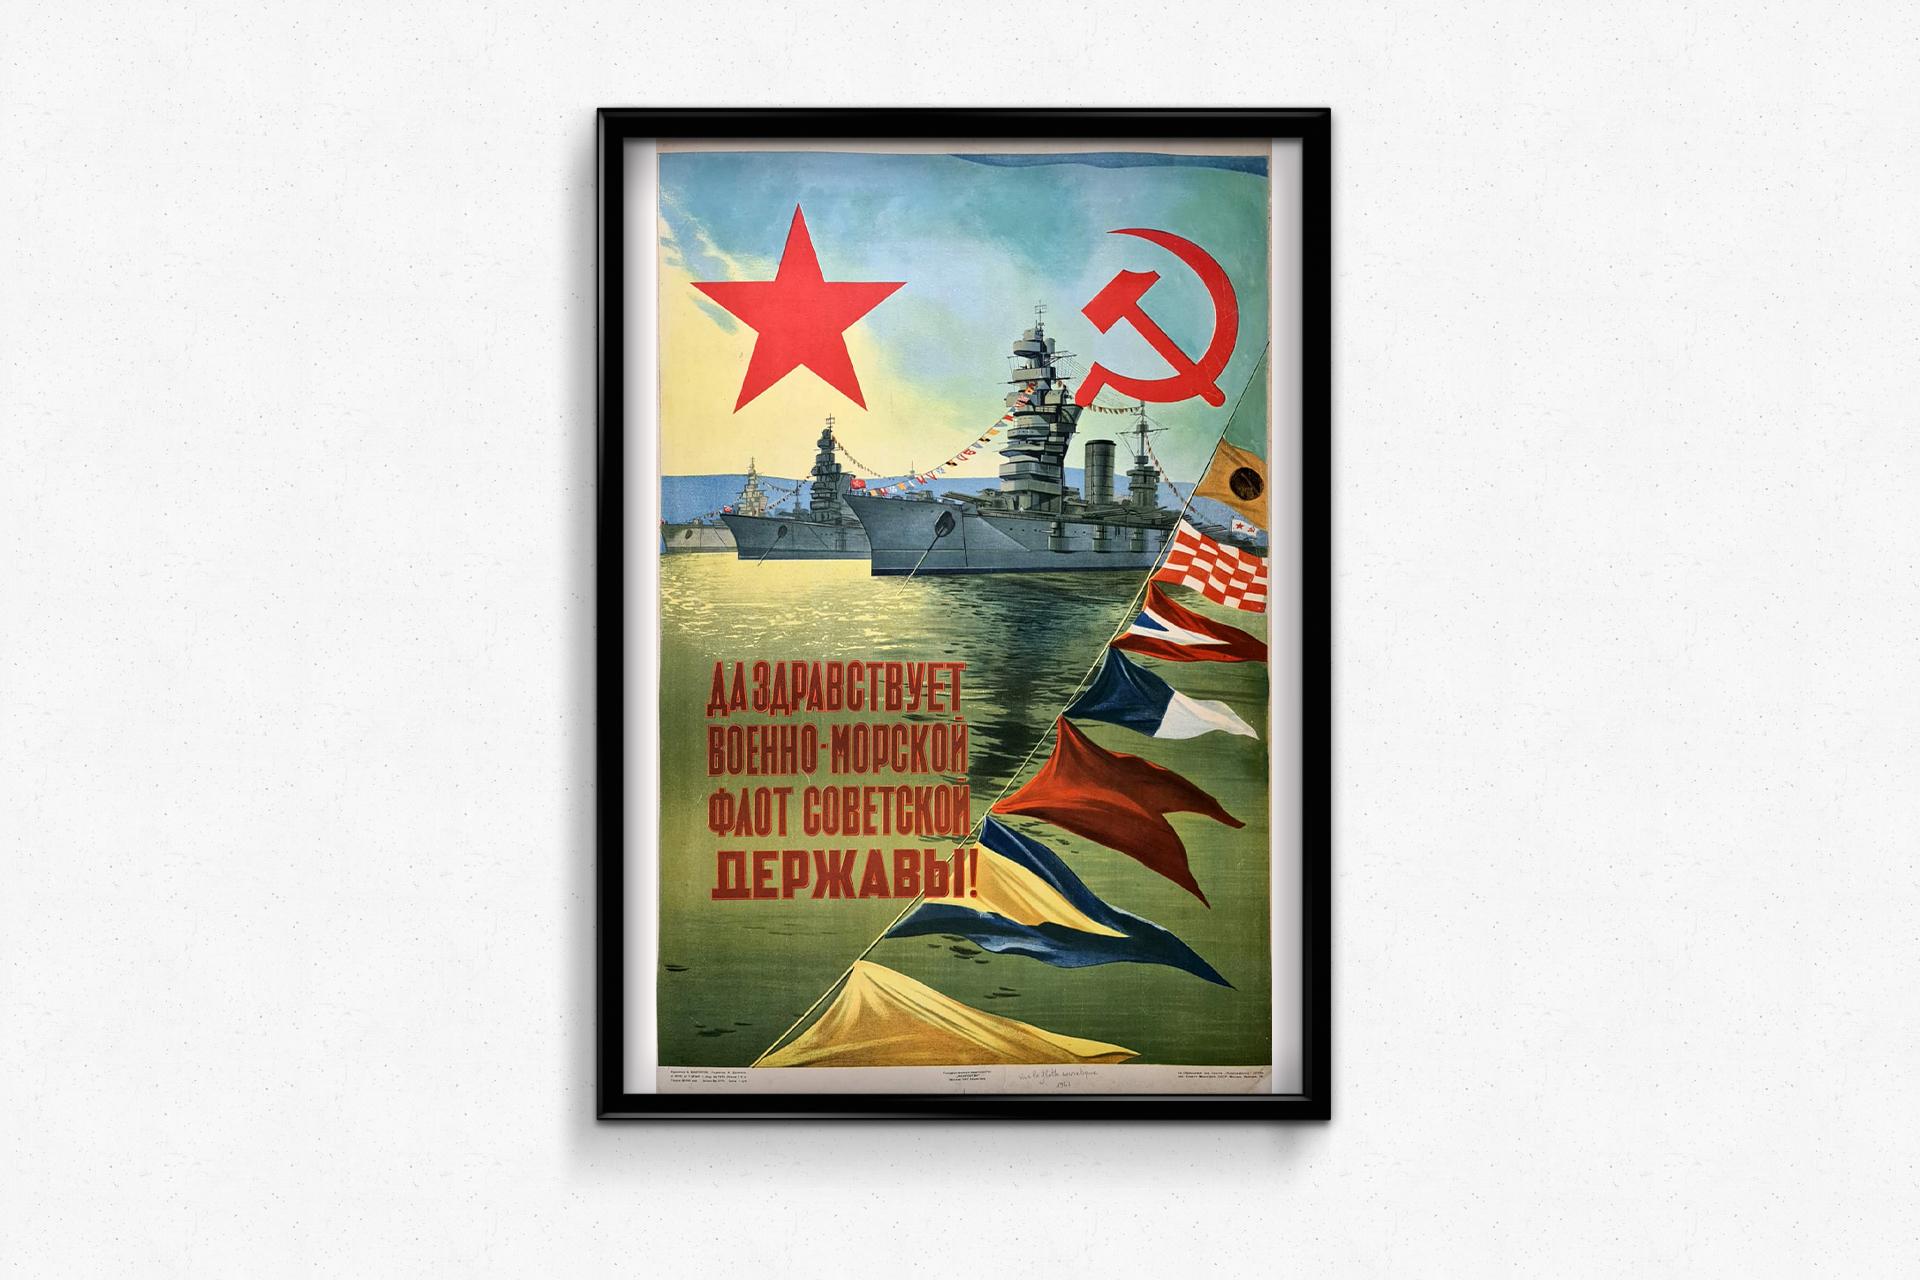 Affiche soviétique de 1947, qui dépeint la grandeur de la flotte de la marine soviétique.

La marine soviétique (russe : Военно-морской флот СССР, Voyenno-morskoy flot SSSR, littéralement 